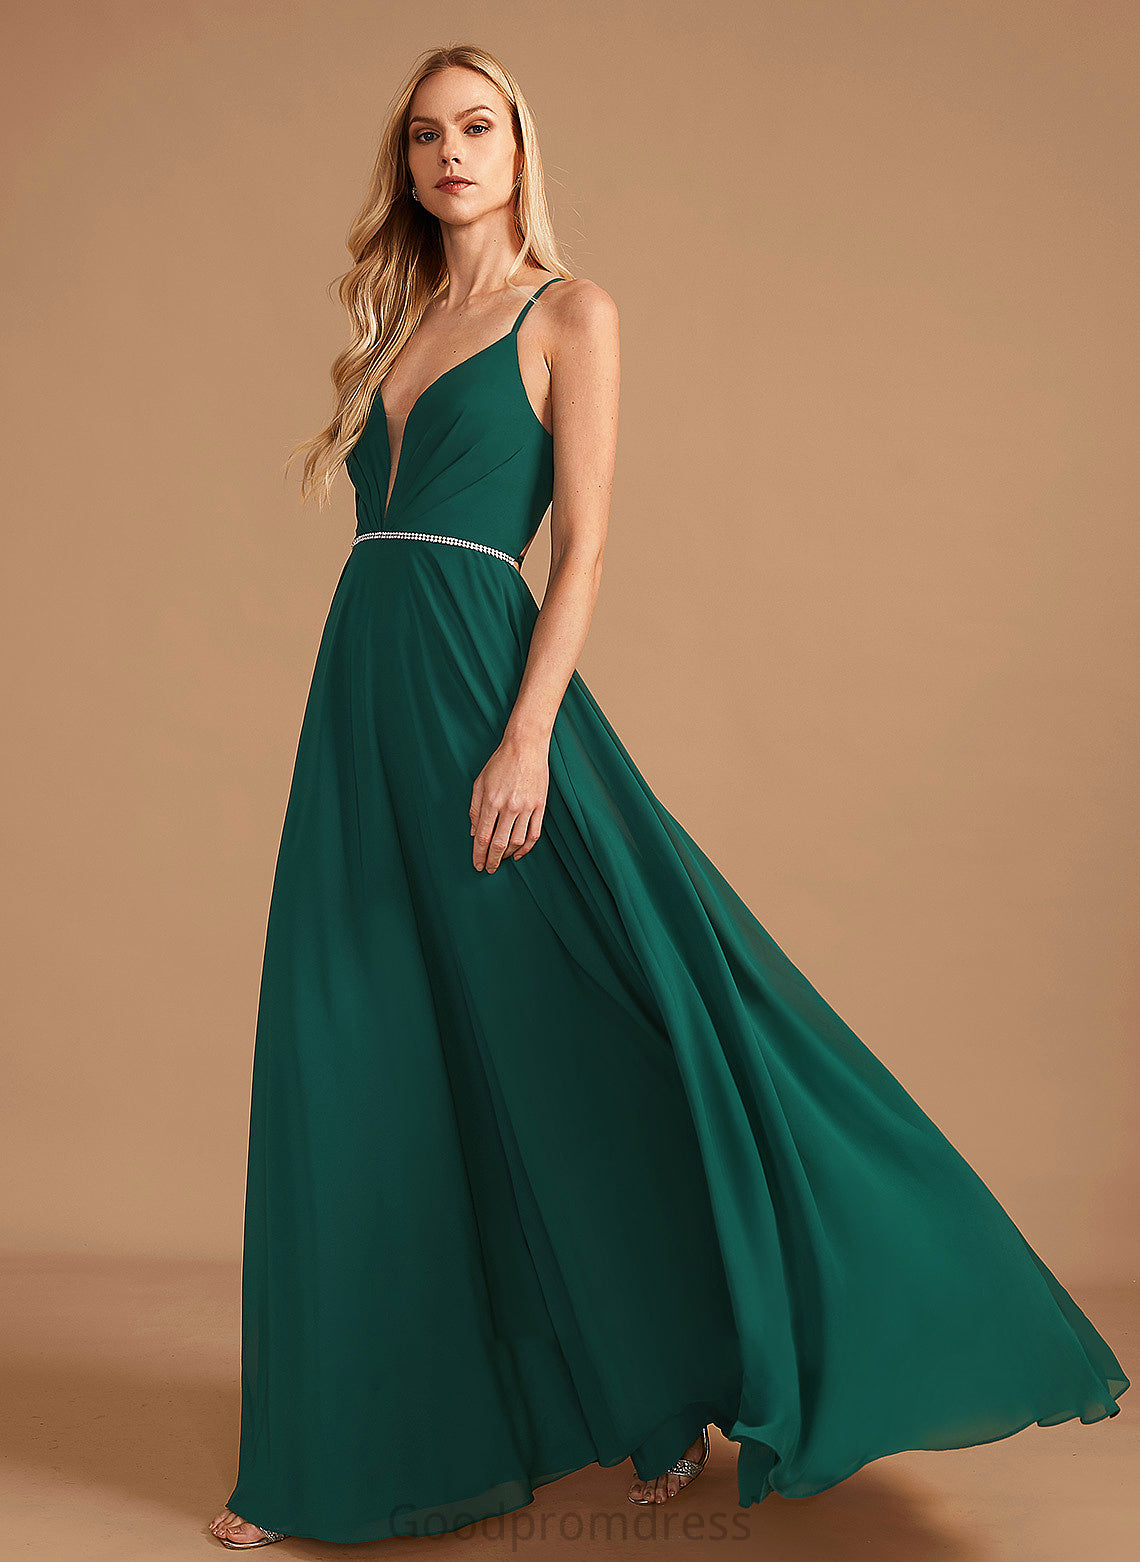 Neckline Silhouette Beading V-neck Length A-Line Fabric Embellishment Floor-Length Kaia Floor Length A-Line/Princess Bridesmaid Dresses